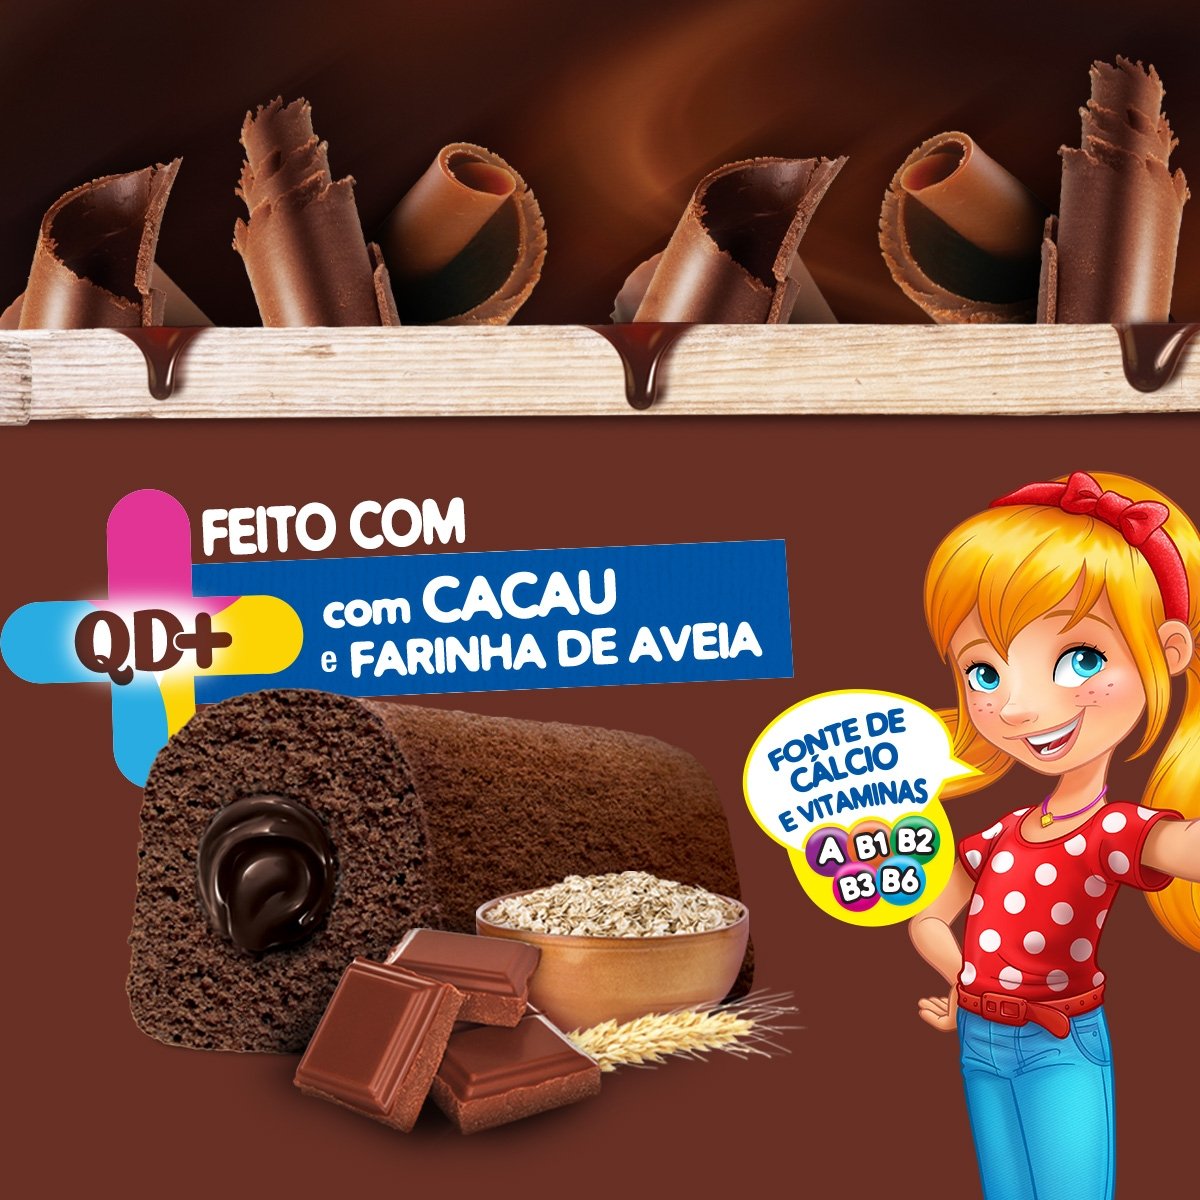 Bolinho Ana Maria 035 G Recheada Duplo Chocolate